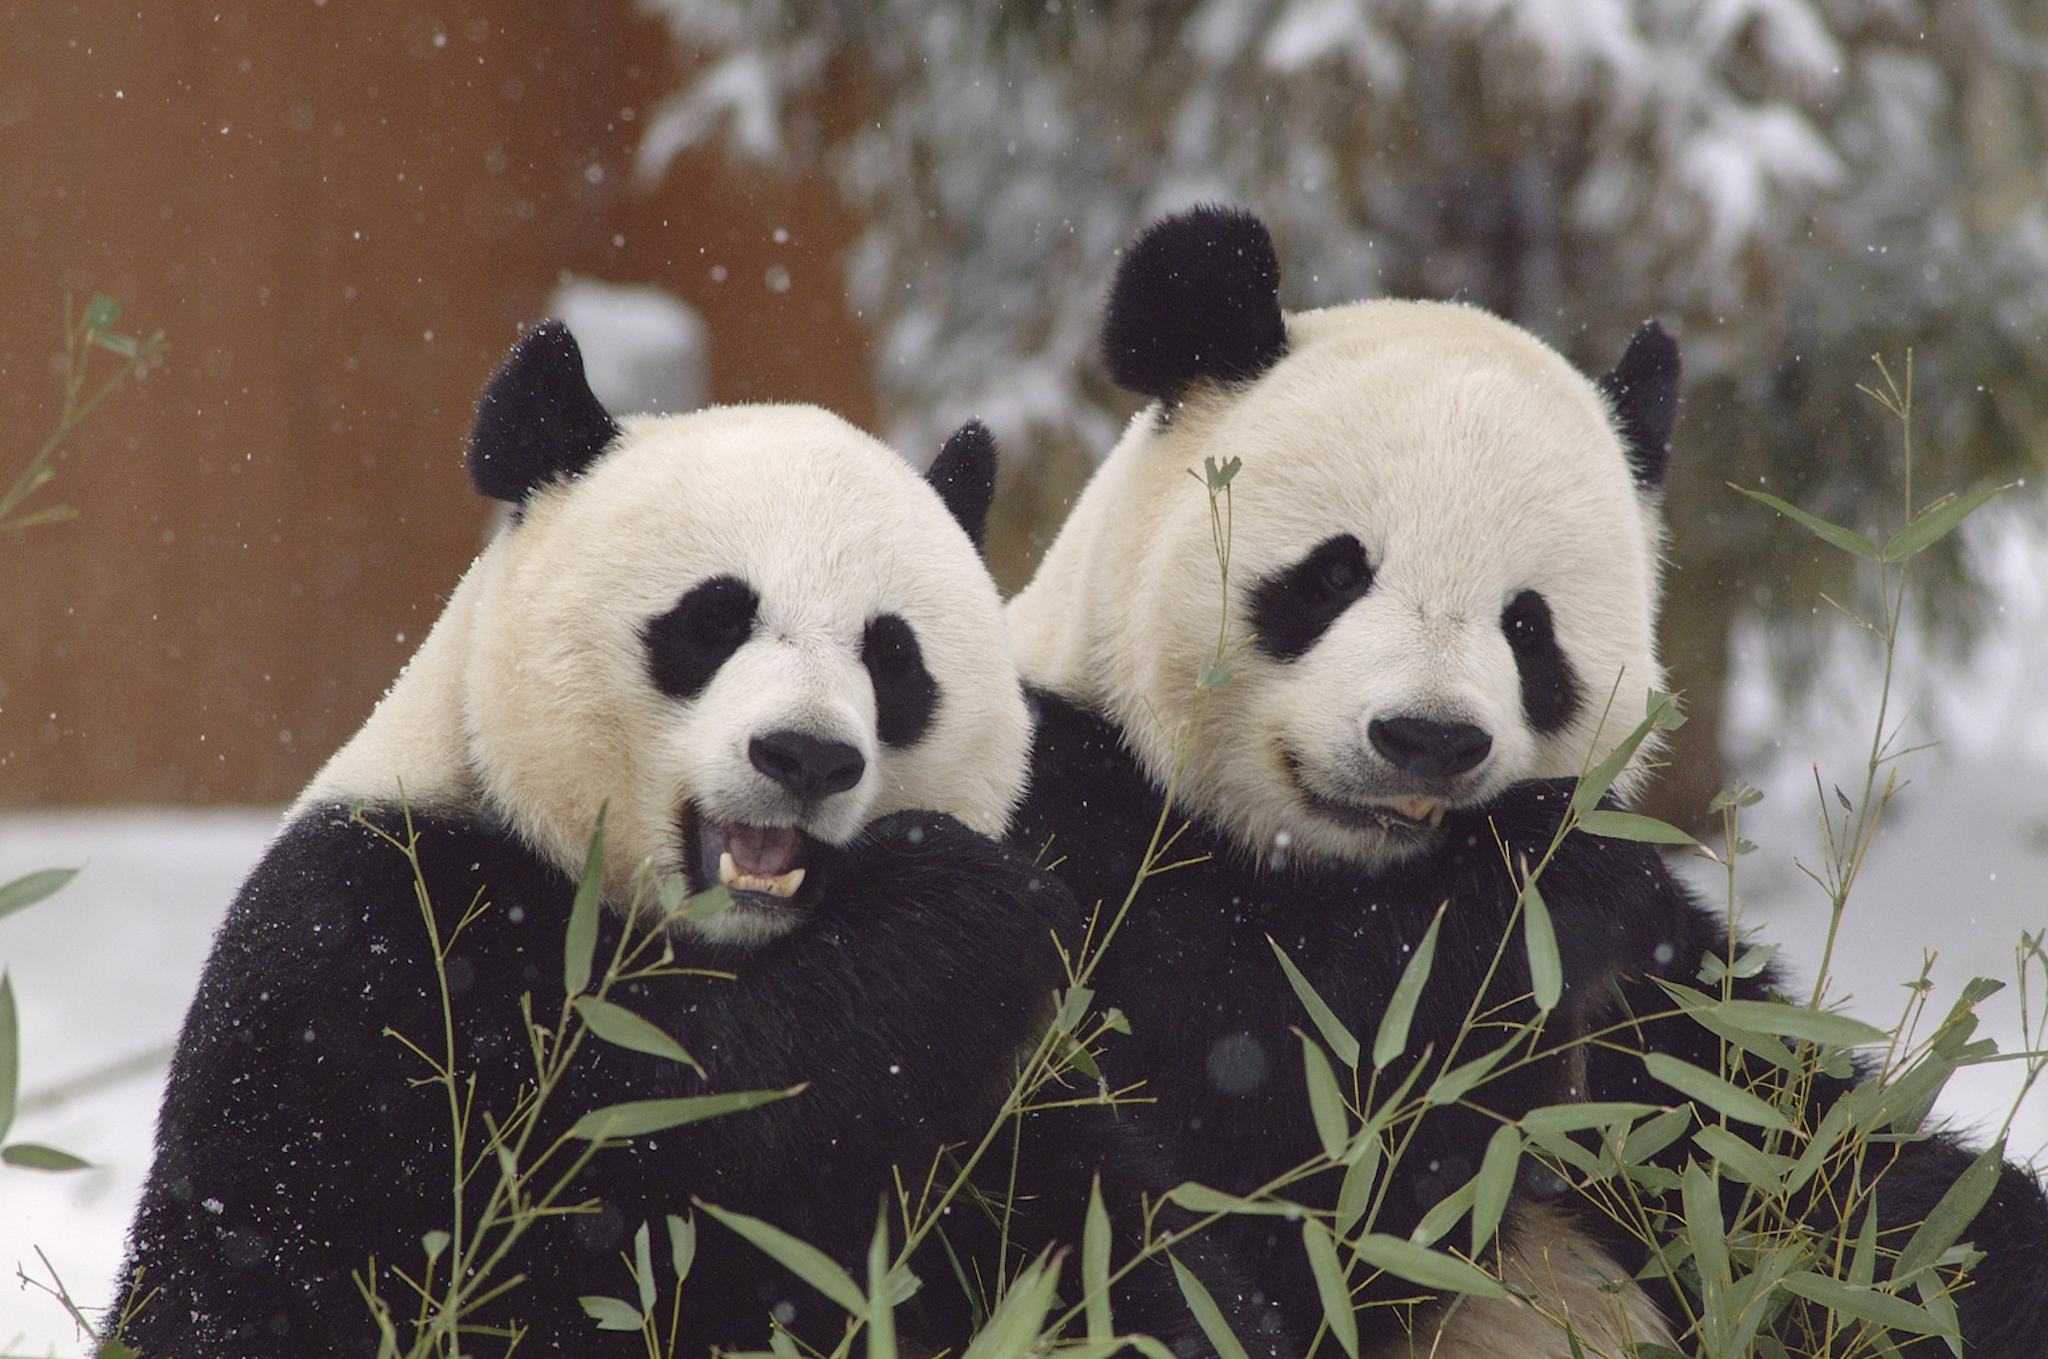 Mei Xiang and Tian Tian. Photo courtesy of the National Zoo.